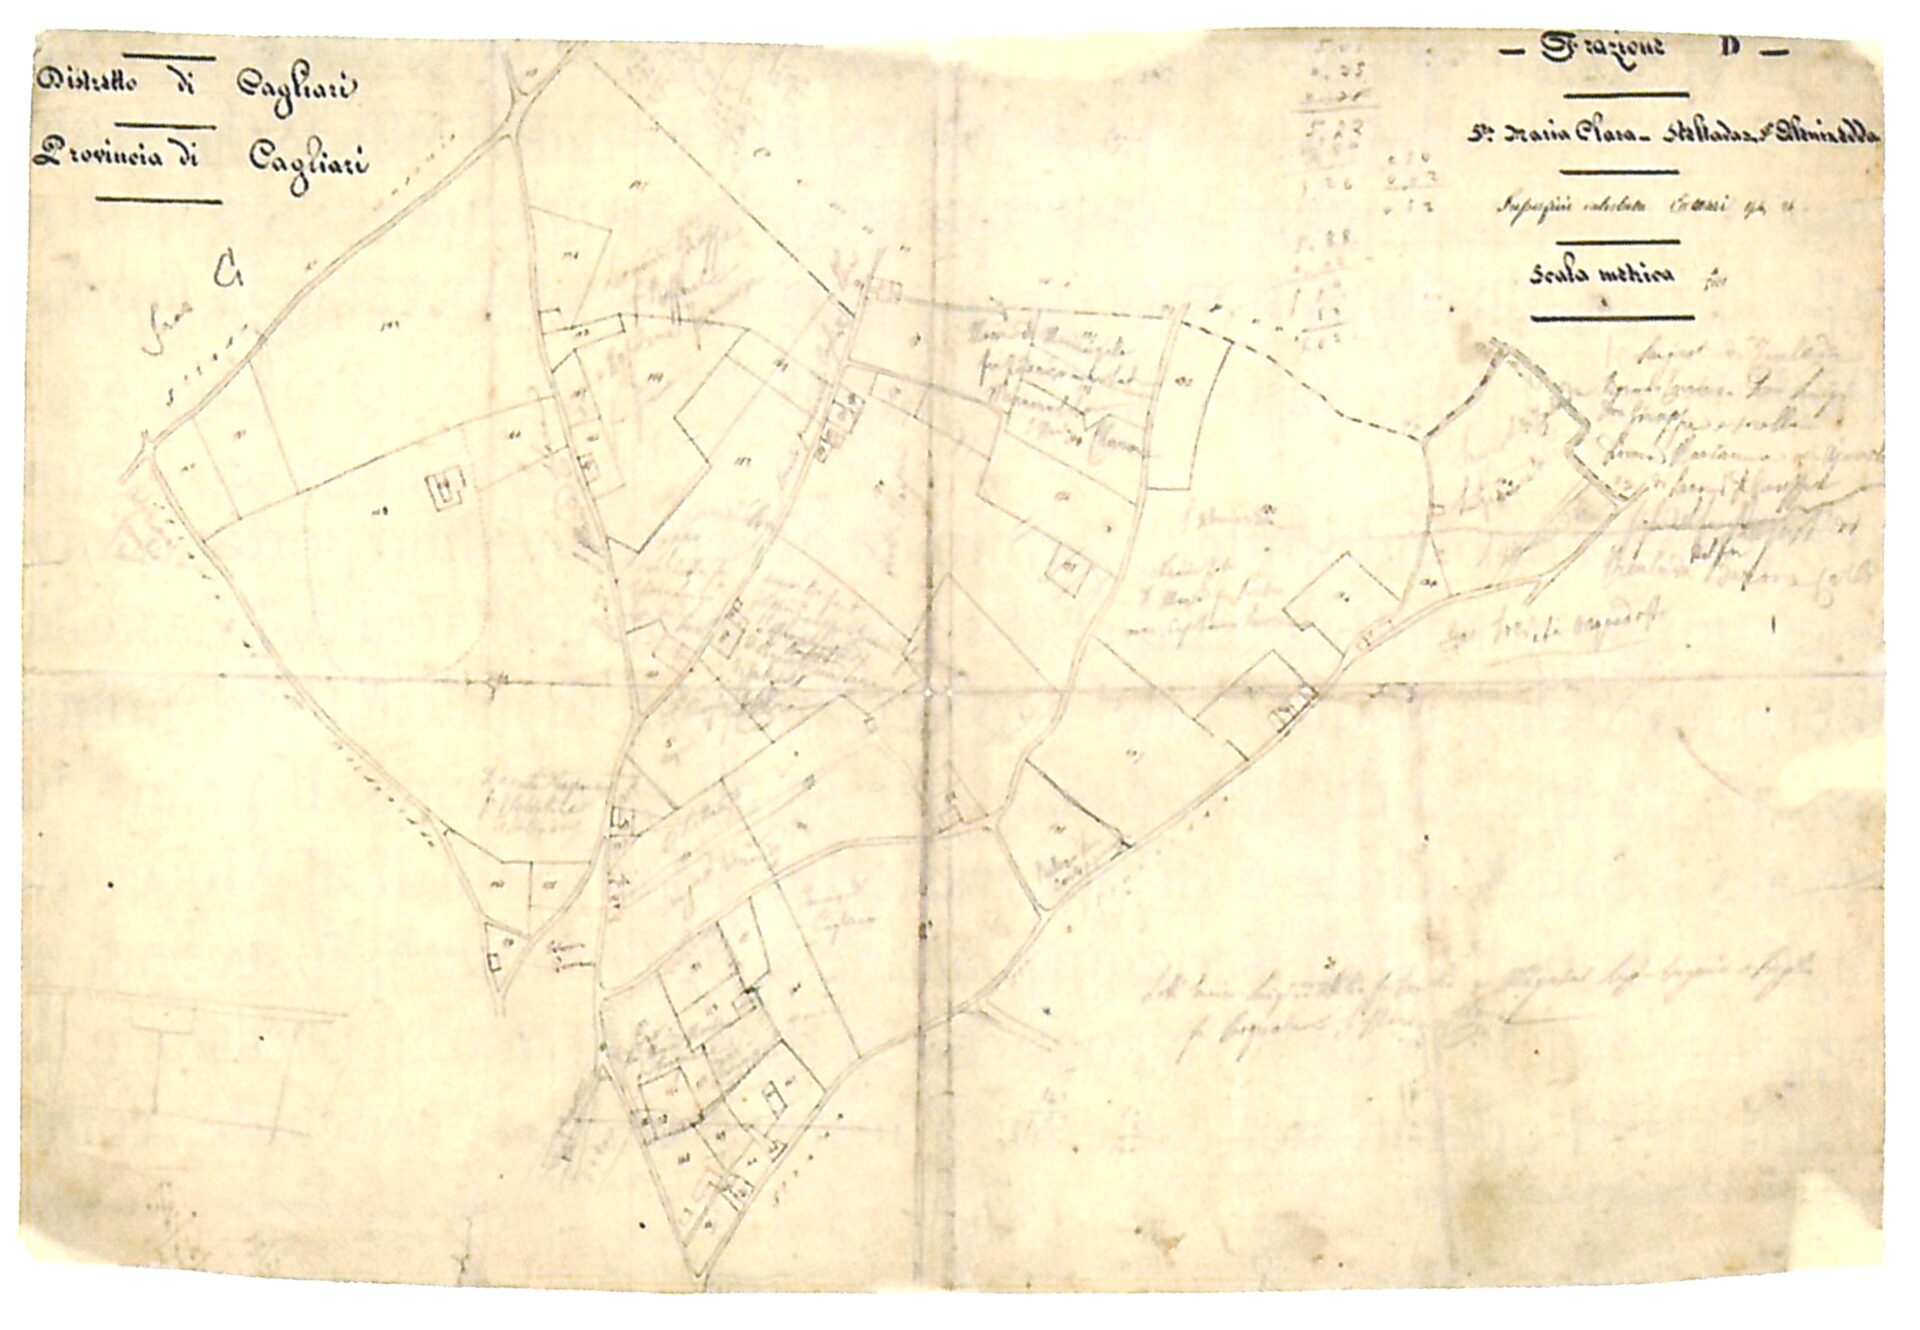 Fig. 4 Archivio di Stato ai Cagliari, stralcio di mappa catastale relativa all'area di Santa Maria Clara, Stelladas, Sant'Alenixedda - frazione D.